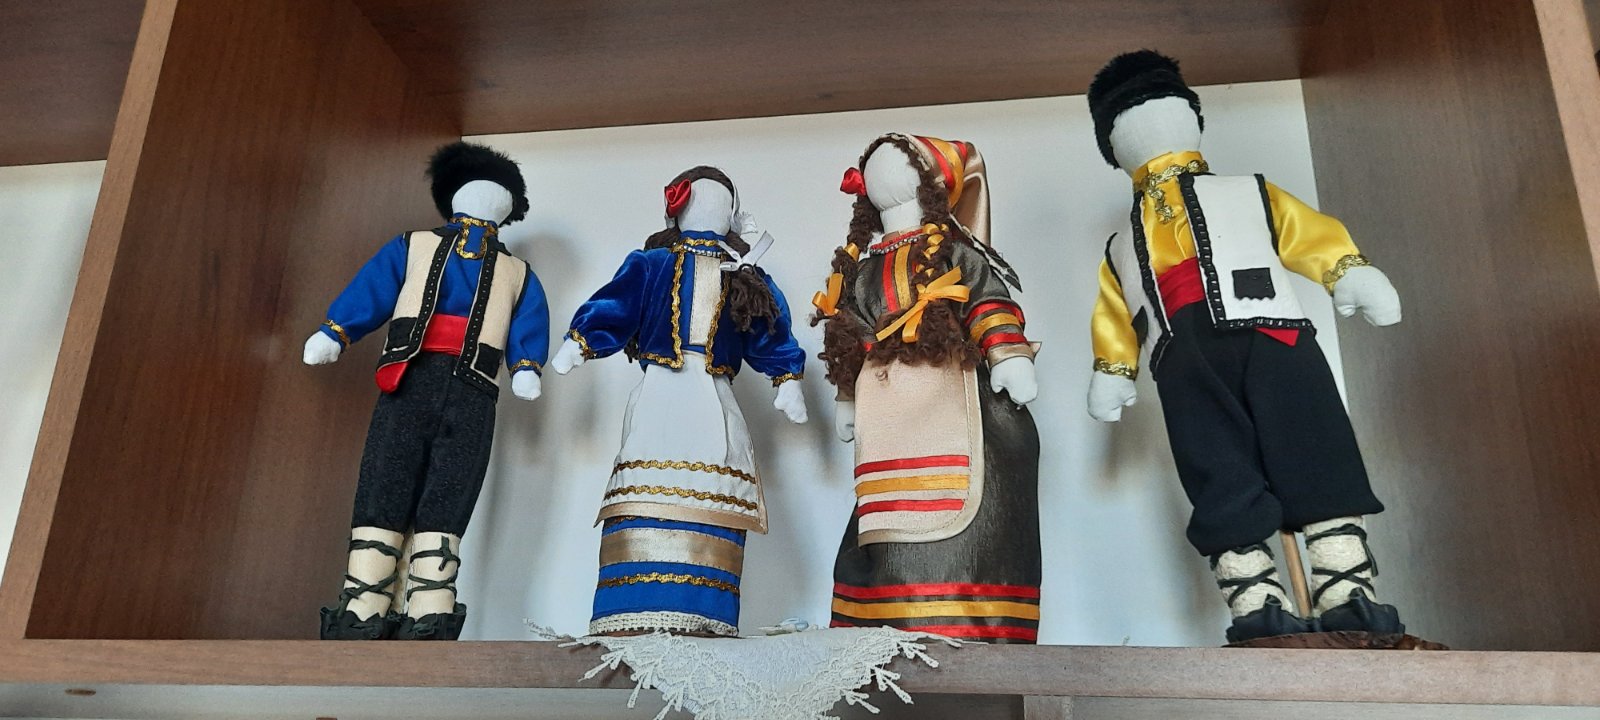 Великі дівчатка не грають у ляльки, вони наділяють їх енергетикою свого роду: історія створення унікальної колекції успішної гагаузки з Бессарабії Ольги Кулаксиз